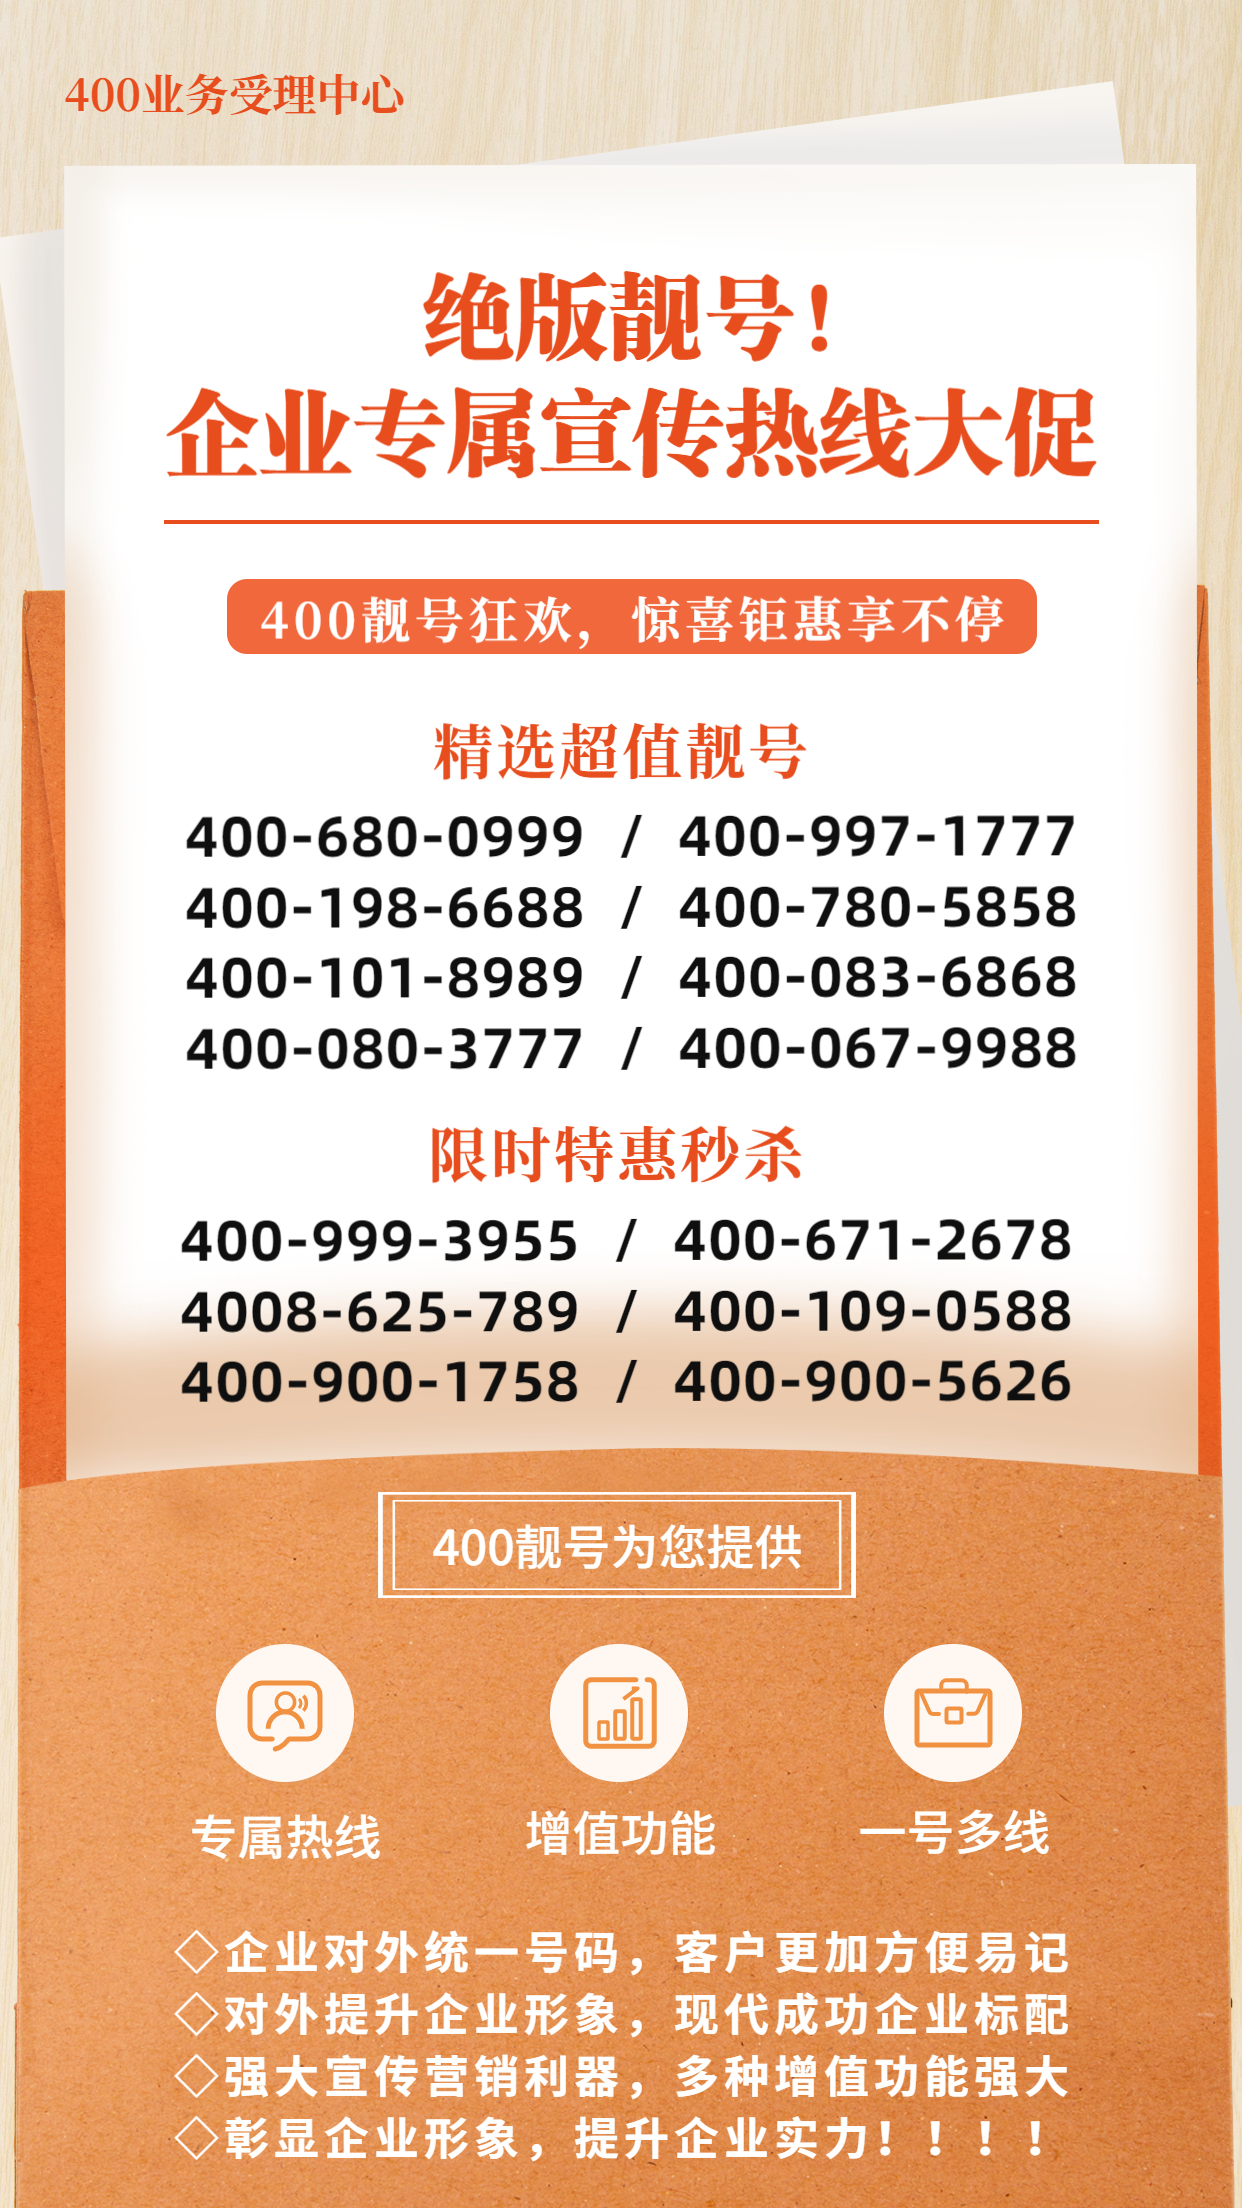 2022年7月15日 400电话申请办理优质号码资源汇总